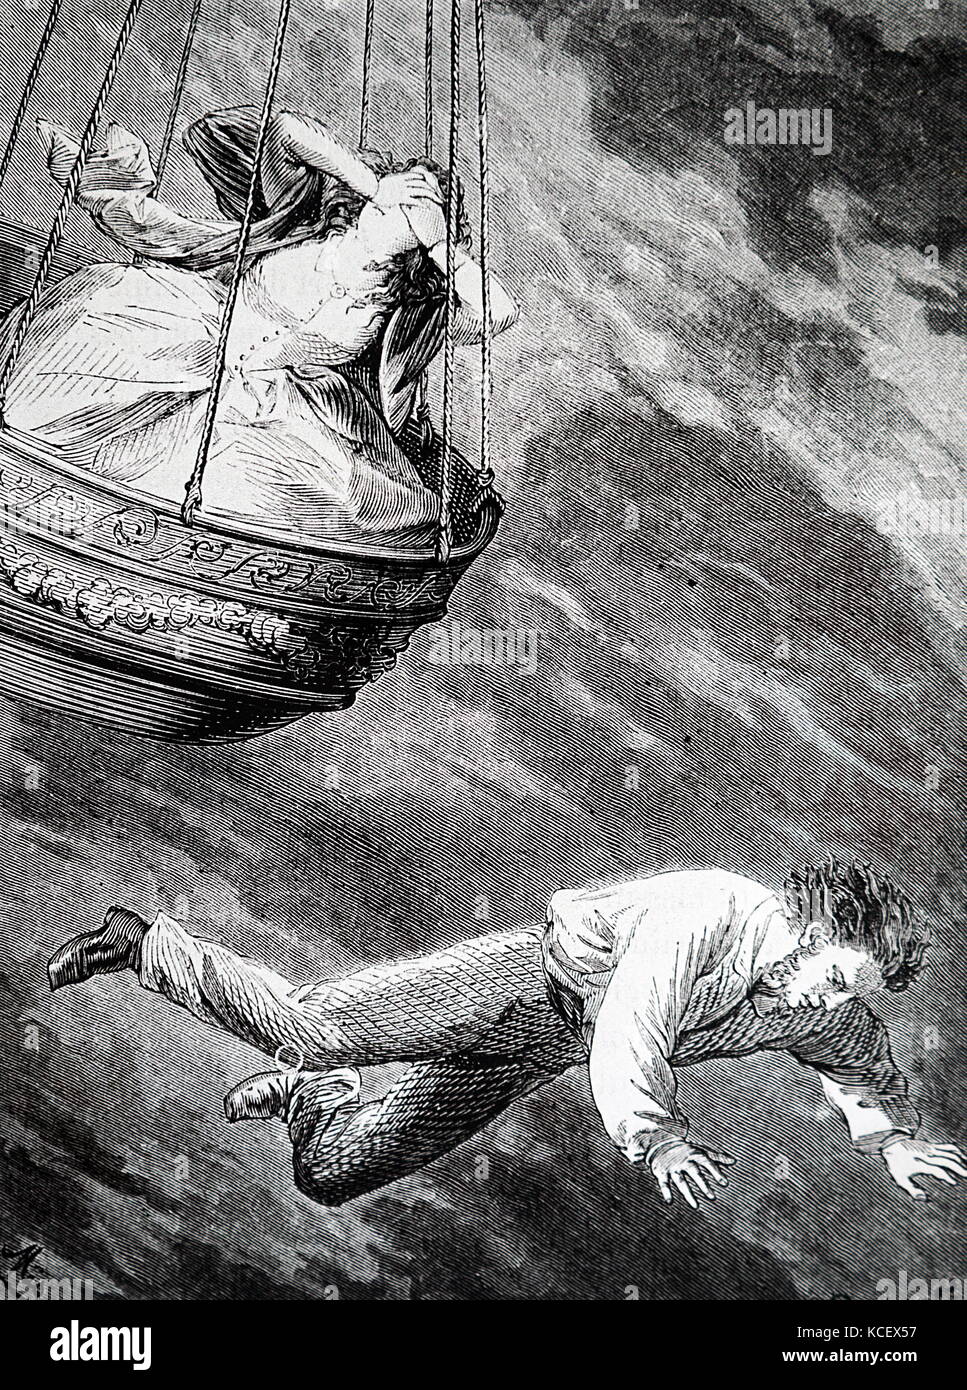 Kupferstich mit der Darstellung eines Ballonfahrer sprang in den Tod, um seine Liebe zu retten. Vom 19. Jahrhundert Stockfoto